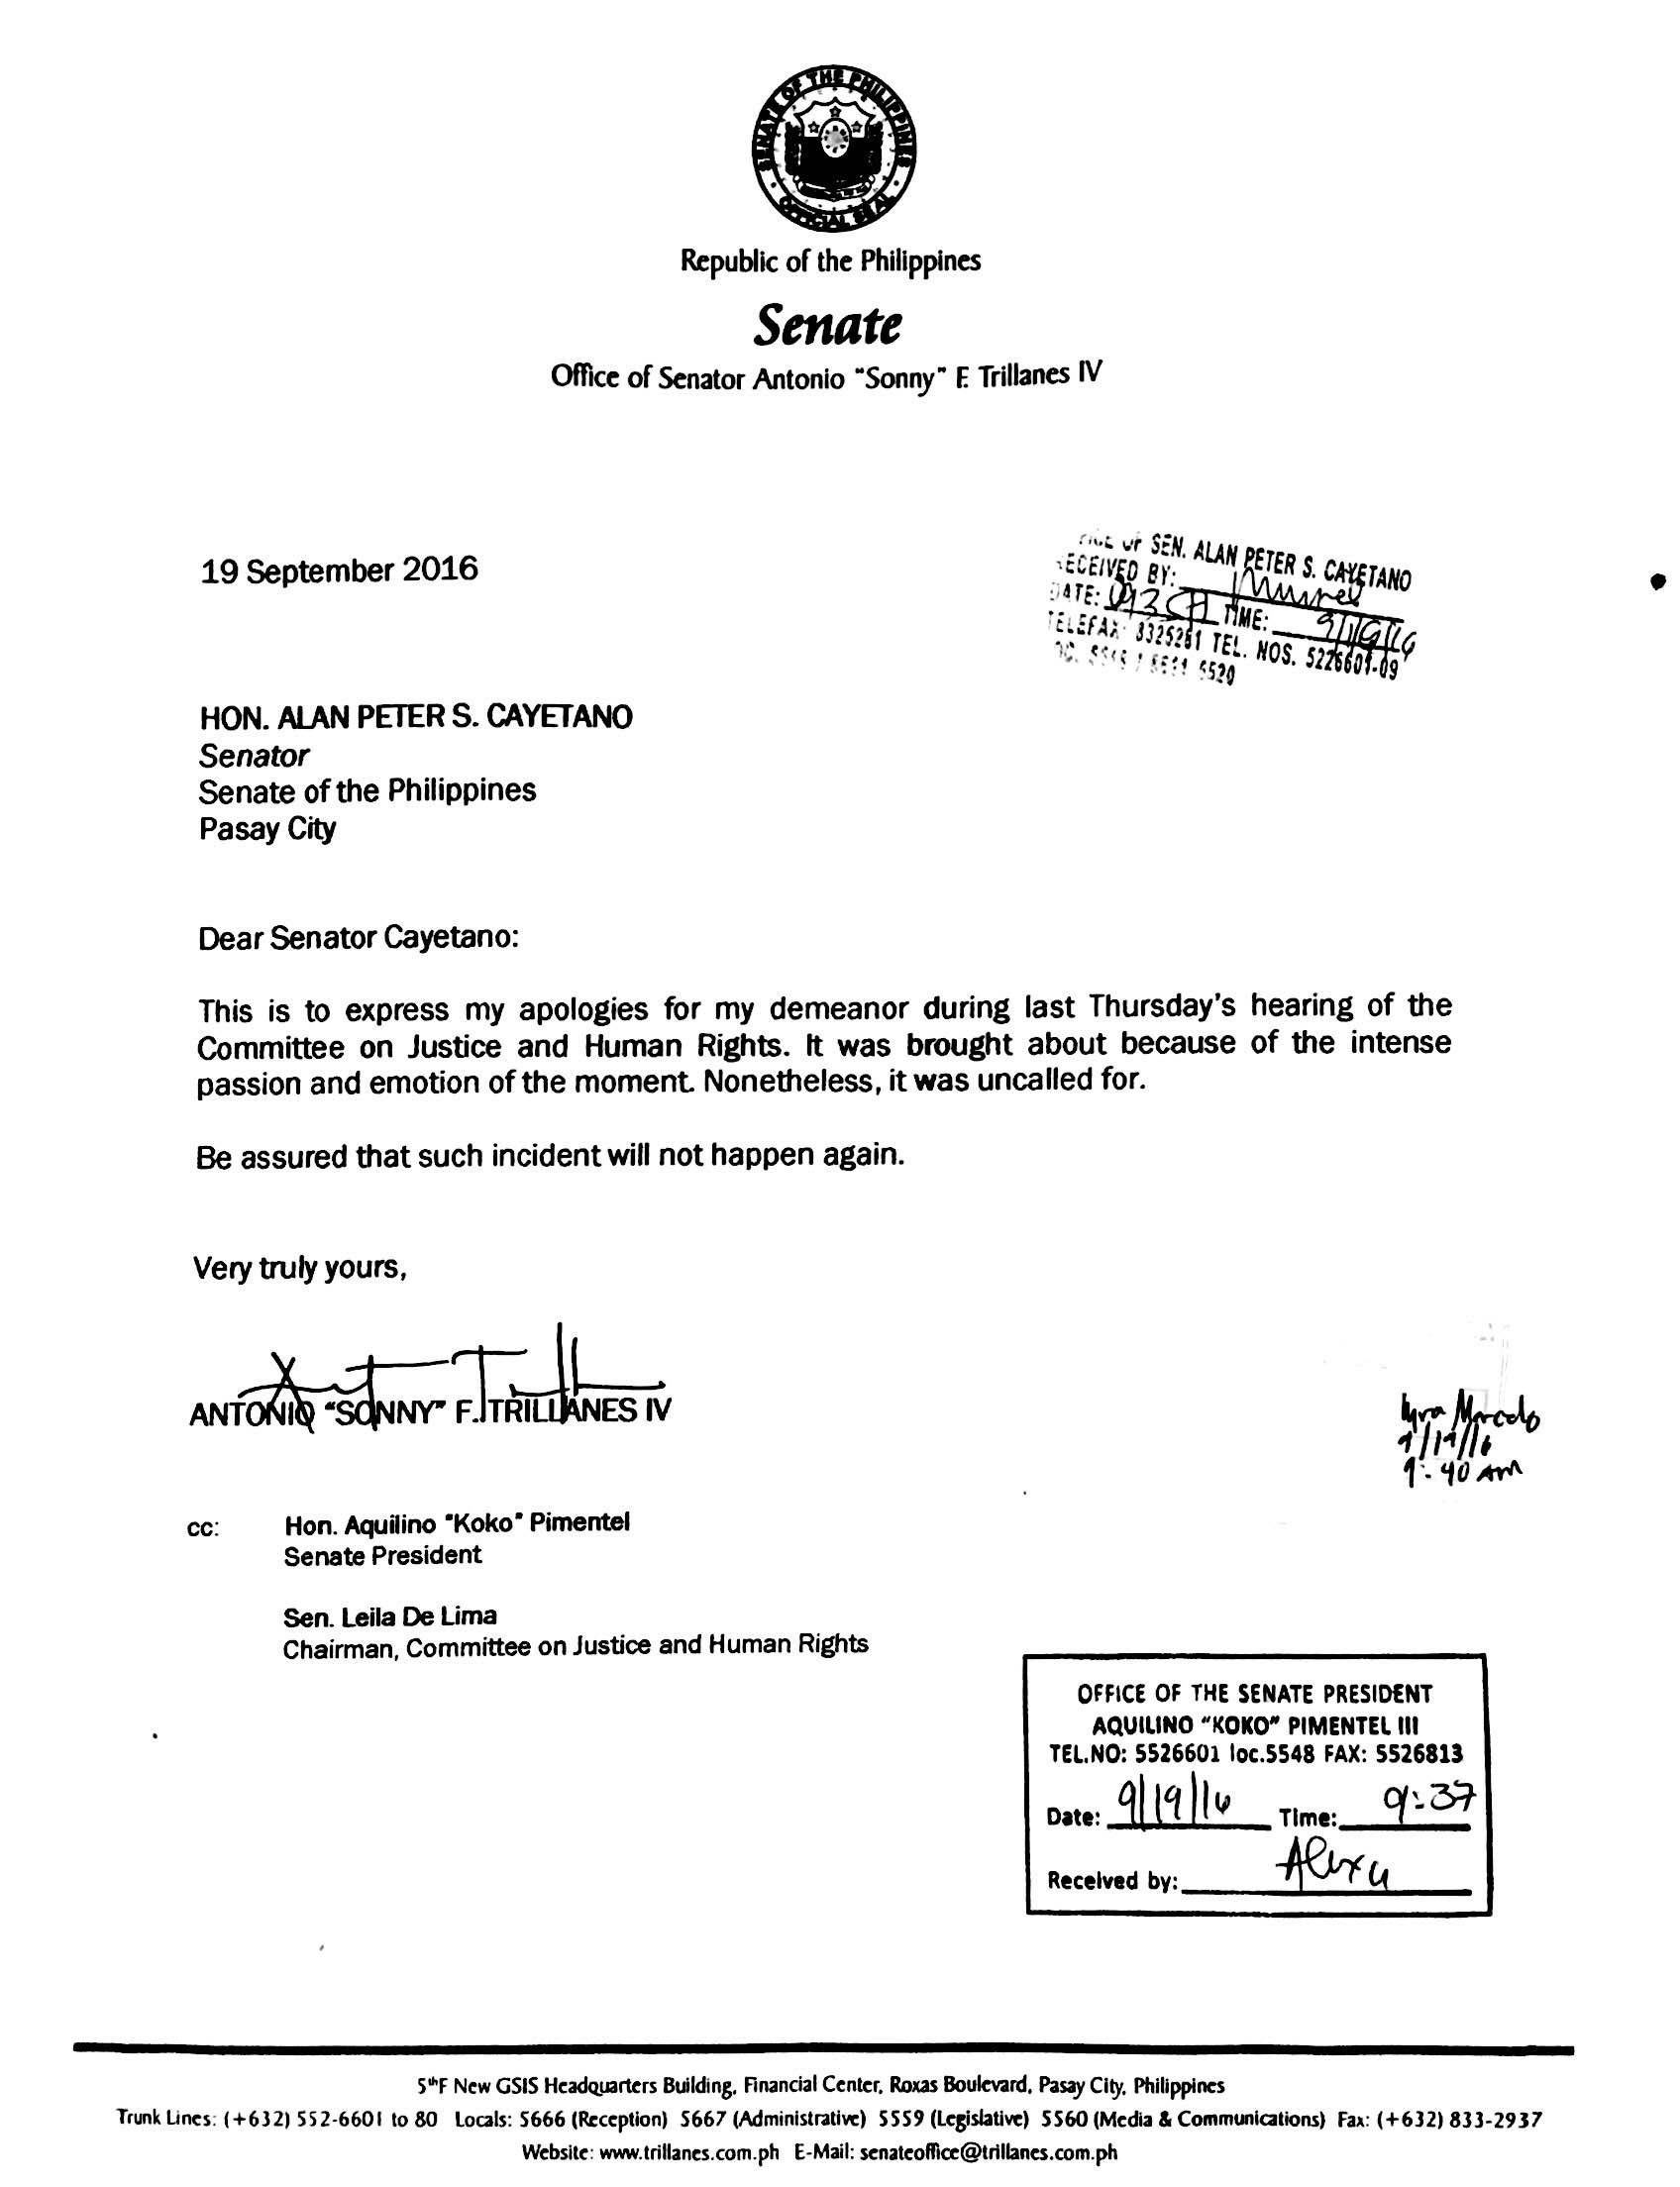 APOLOGY. Senator Trillanes' apology letter addressed to Senator Cayetano. 